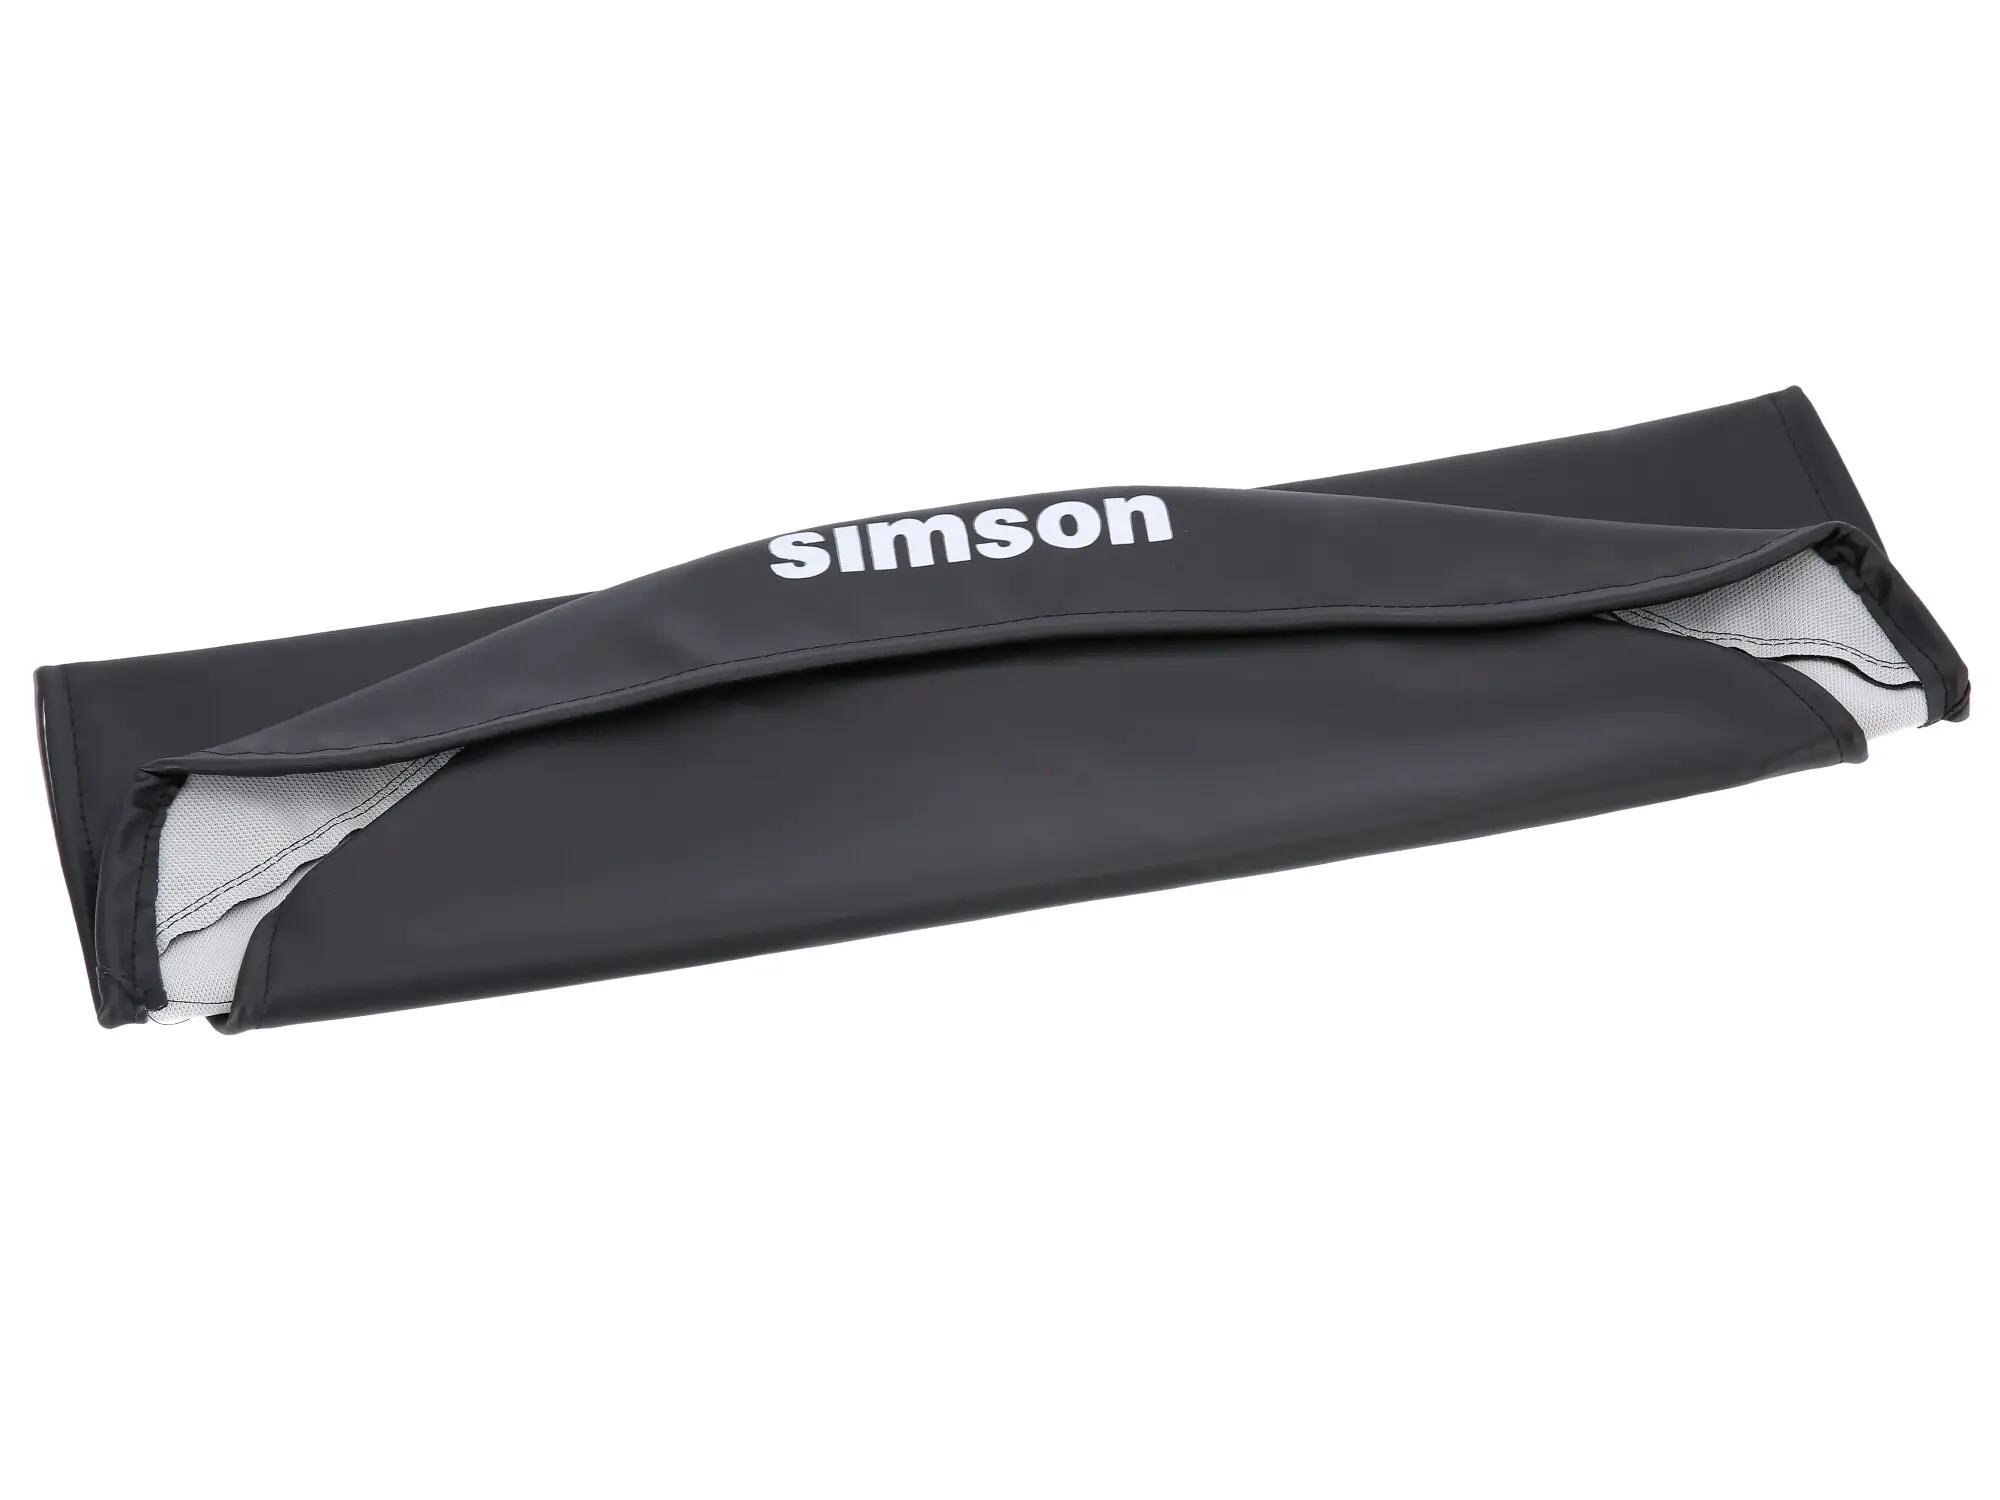 Sitzbezug glatt, schwarz mit SIMSON-Schriftzug - Simson S53, S83, SR50,  SR80 von SIMSON